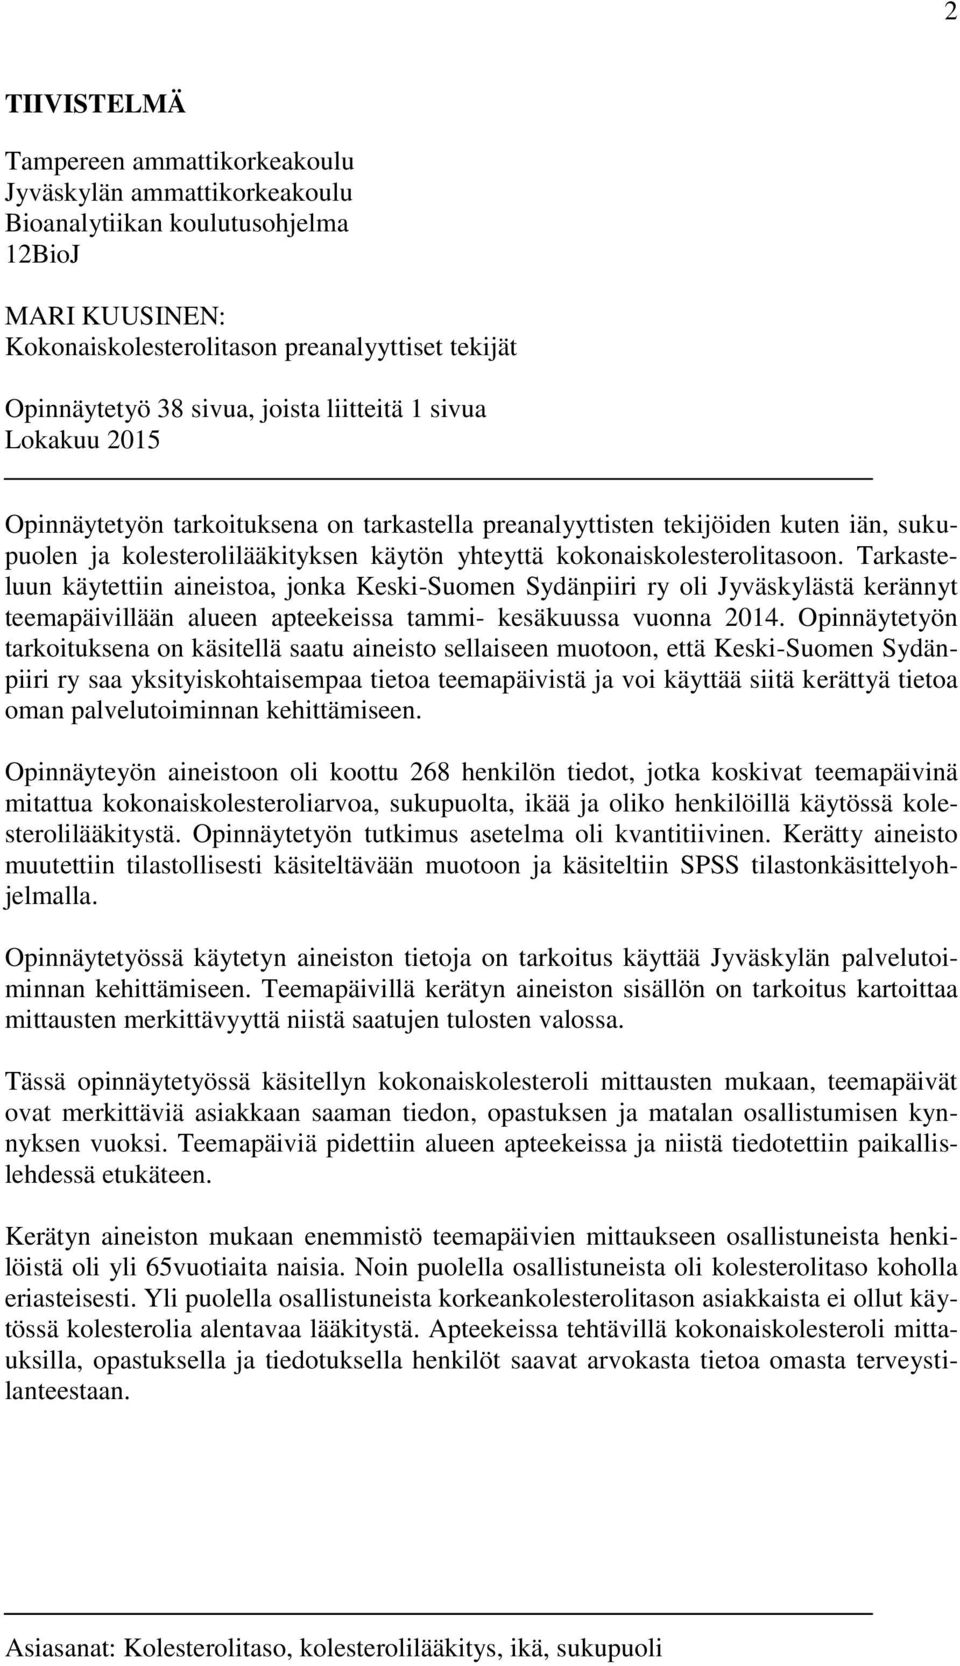 Tarkasteluun käytettiin aineistoa, jonka Keski-Suomen Sydänpiiri ry oli Jyväskylästä kerännyt teemapäivillään alueen apteekeissa tammi- kesäkuussa vuonna 2014.